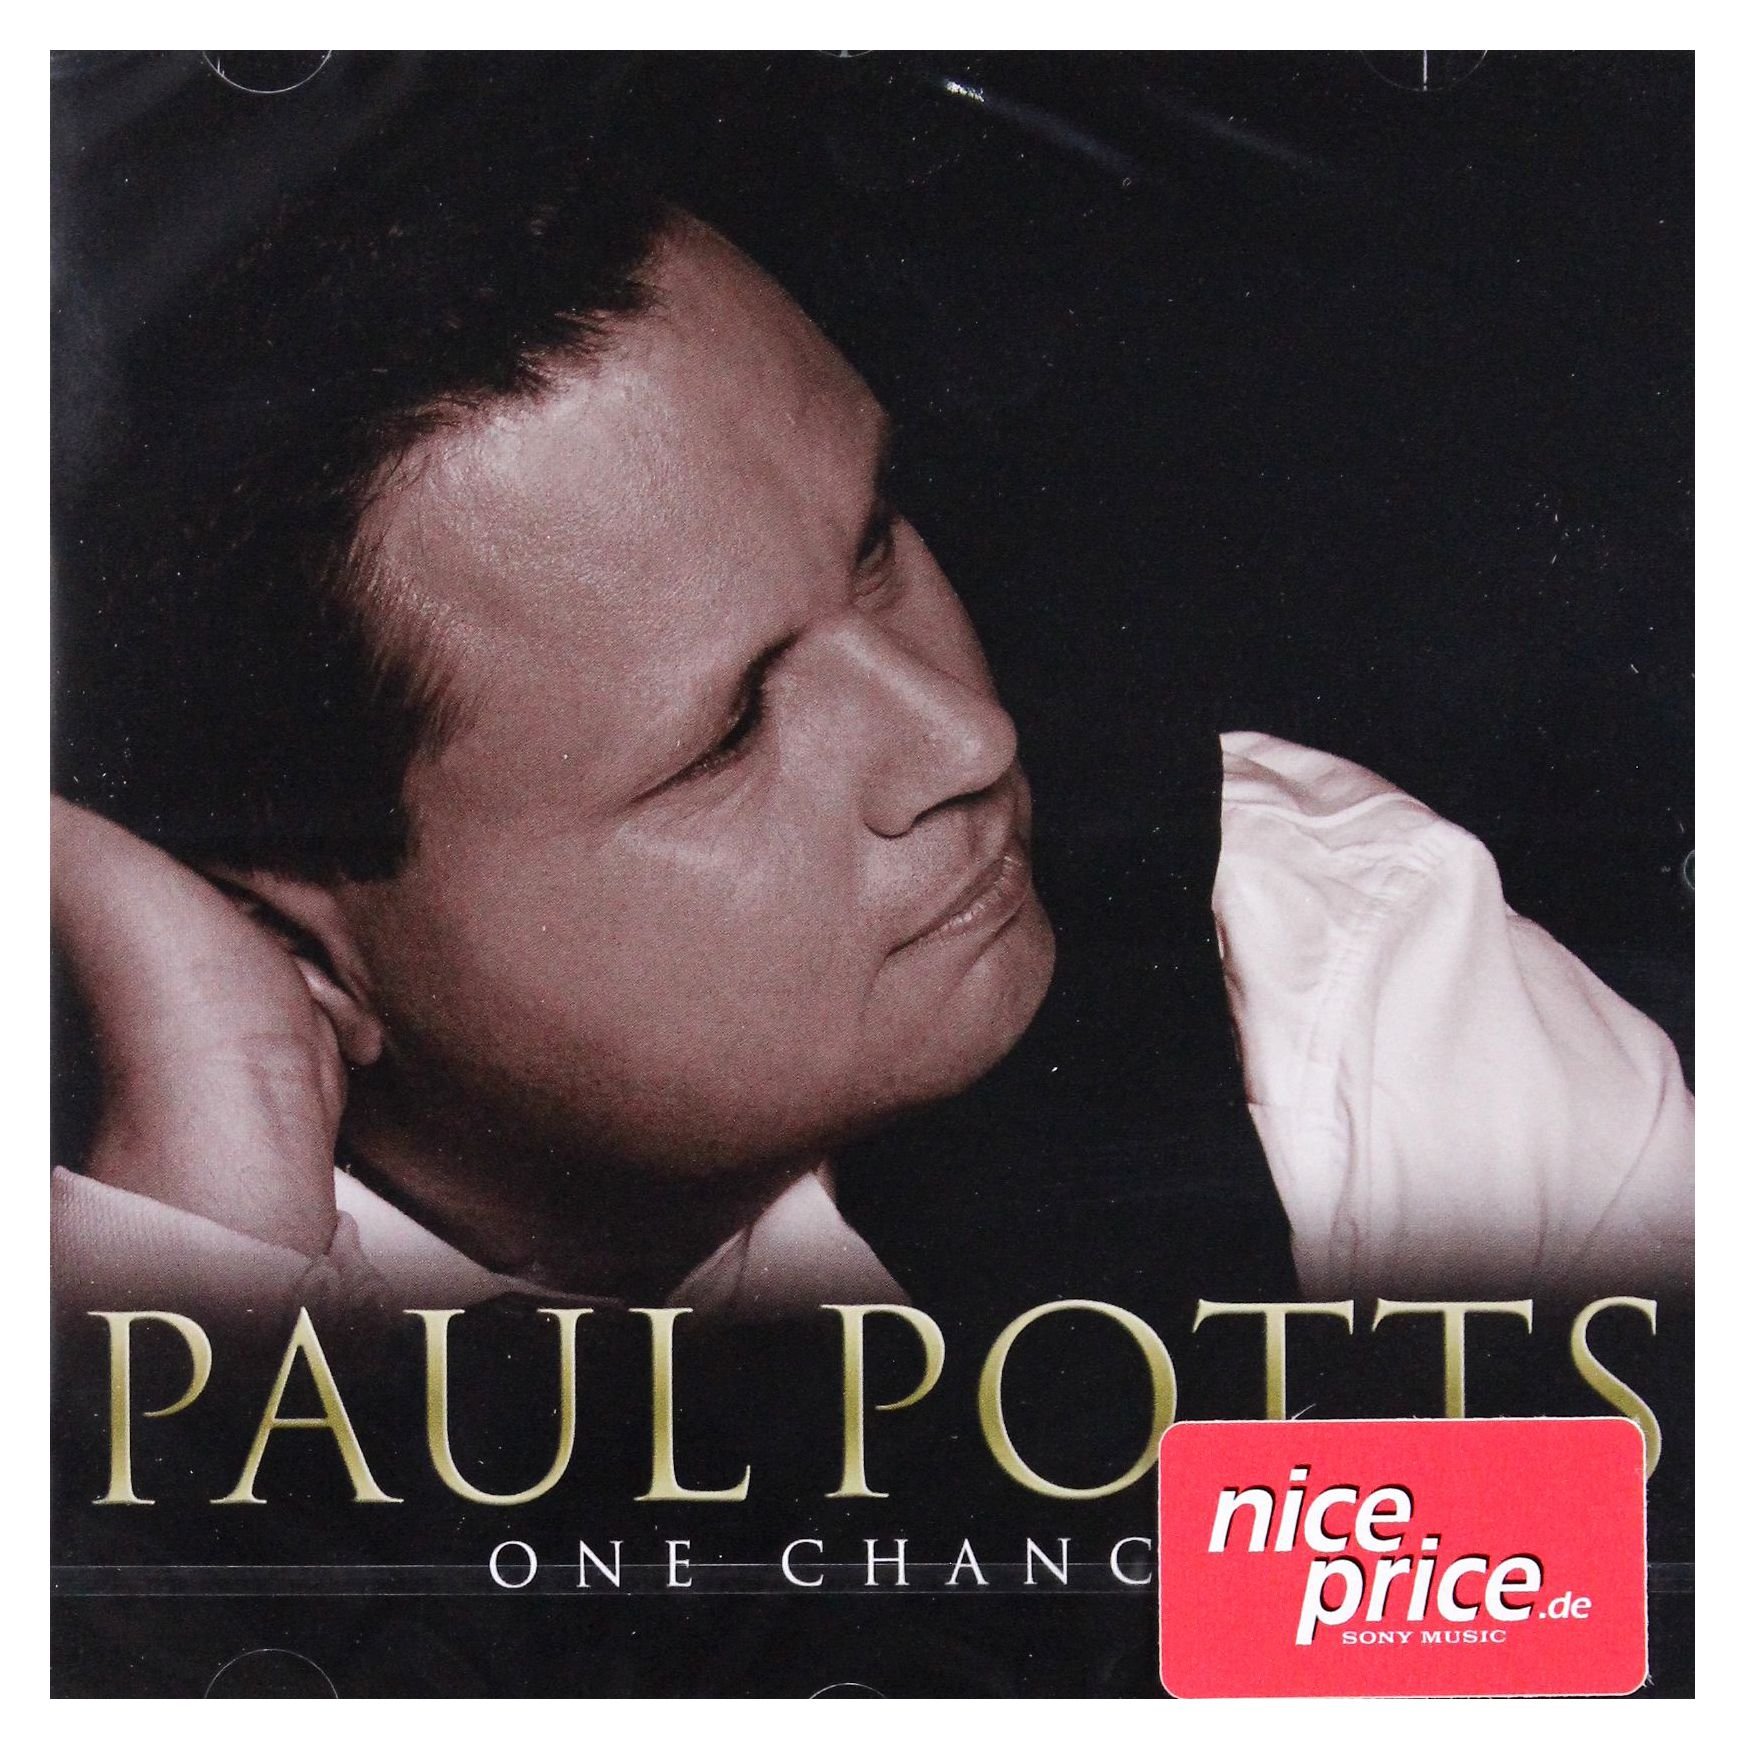 Paul Potts [Regno Unito]: One Chance - CD audio - Foto 1 di 1